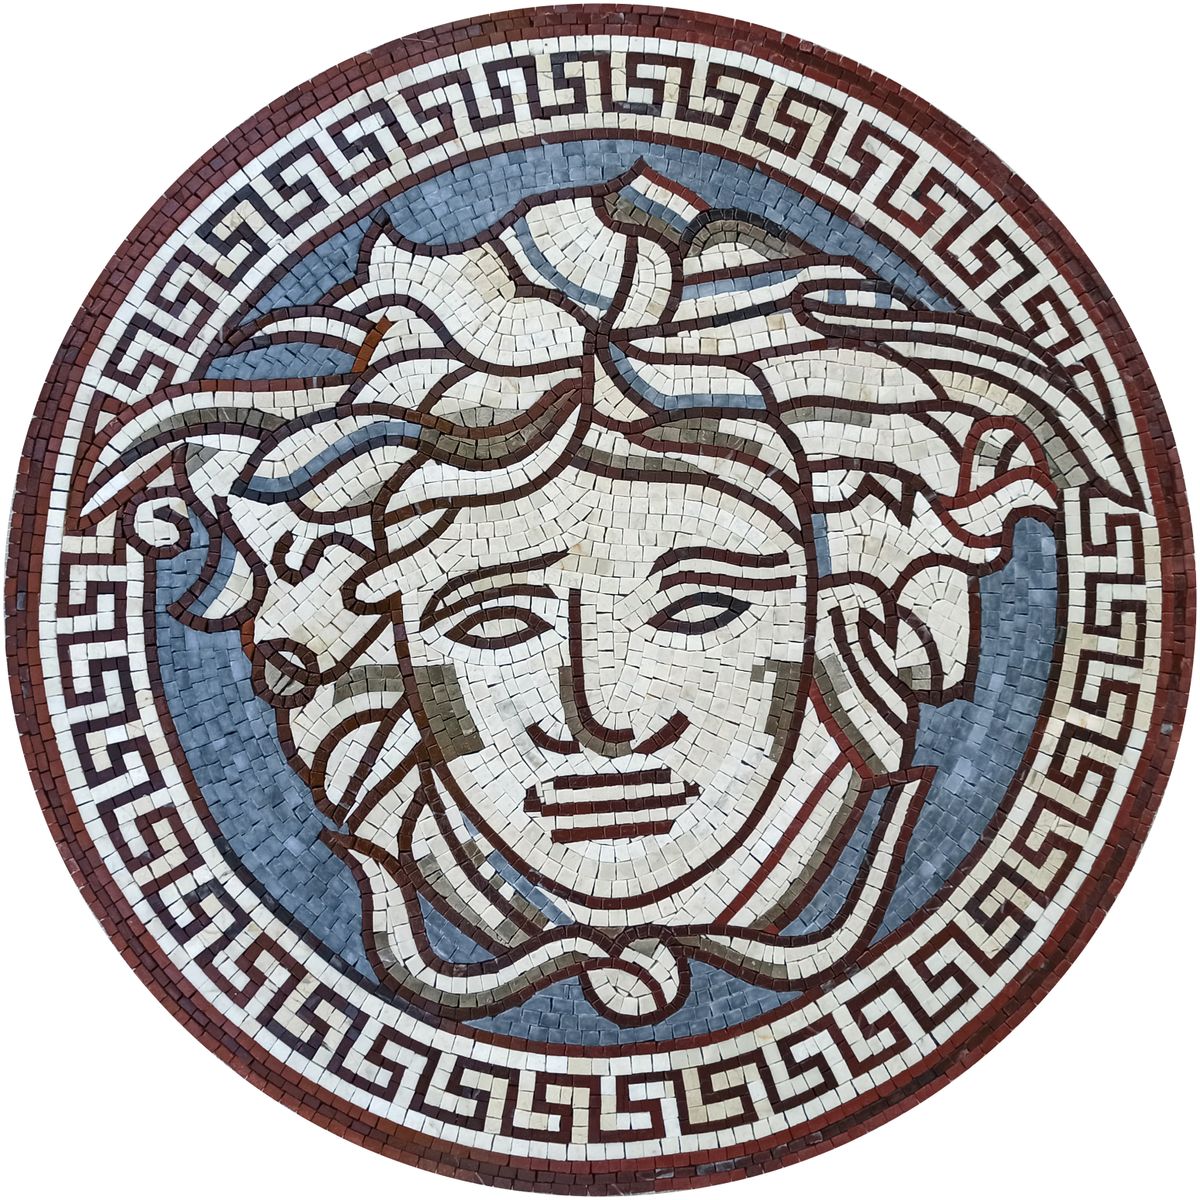 Greek Key and Medusa Mosaic - Mosaic Natural